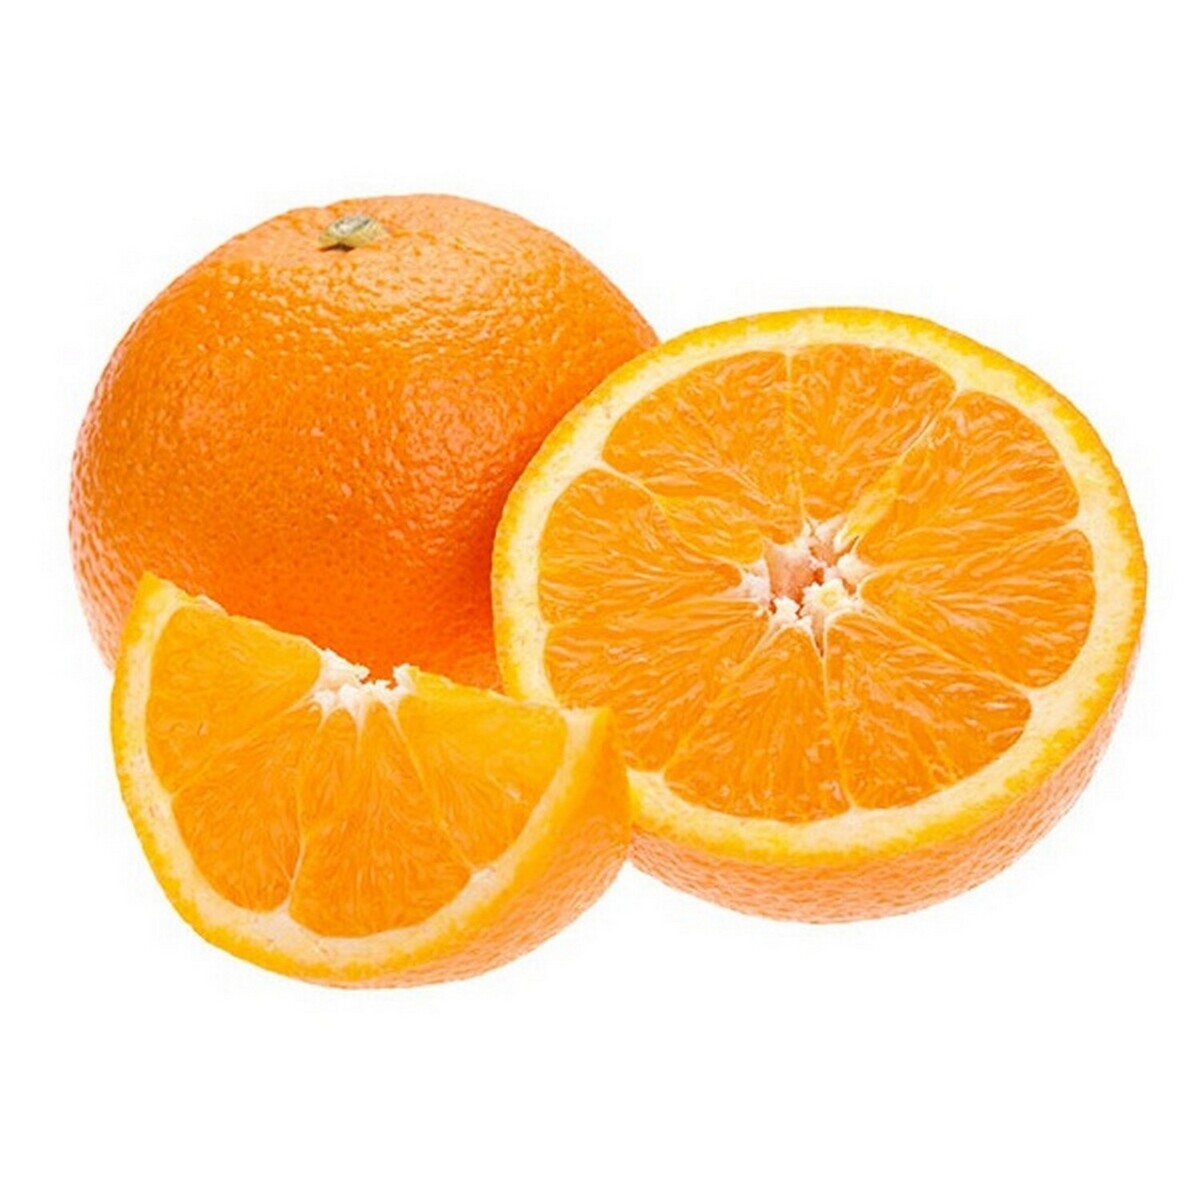 Orange Kinnow approx.900gm-1kg